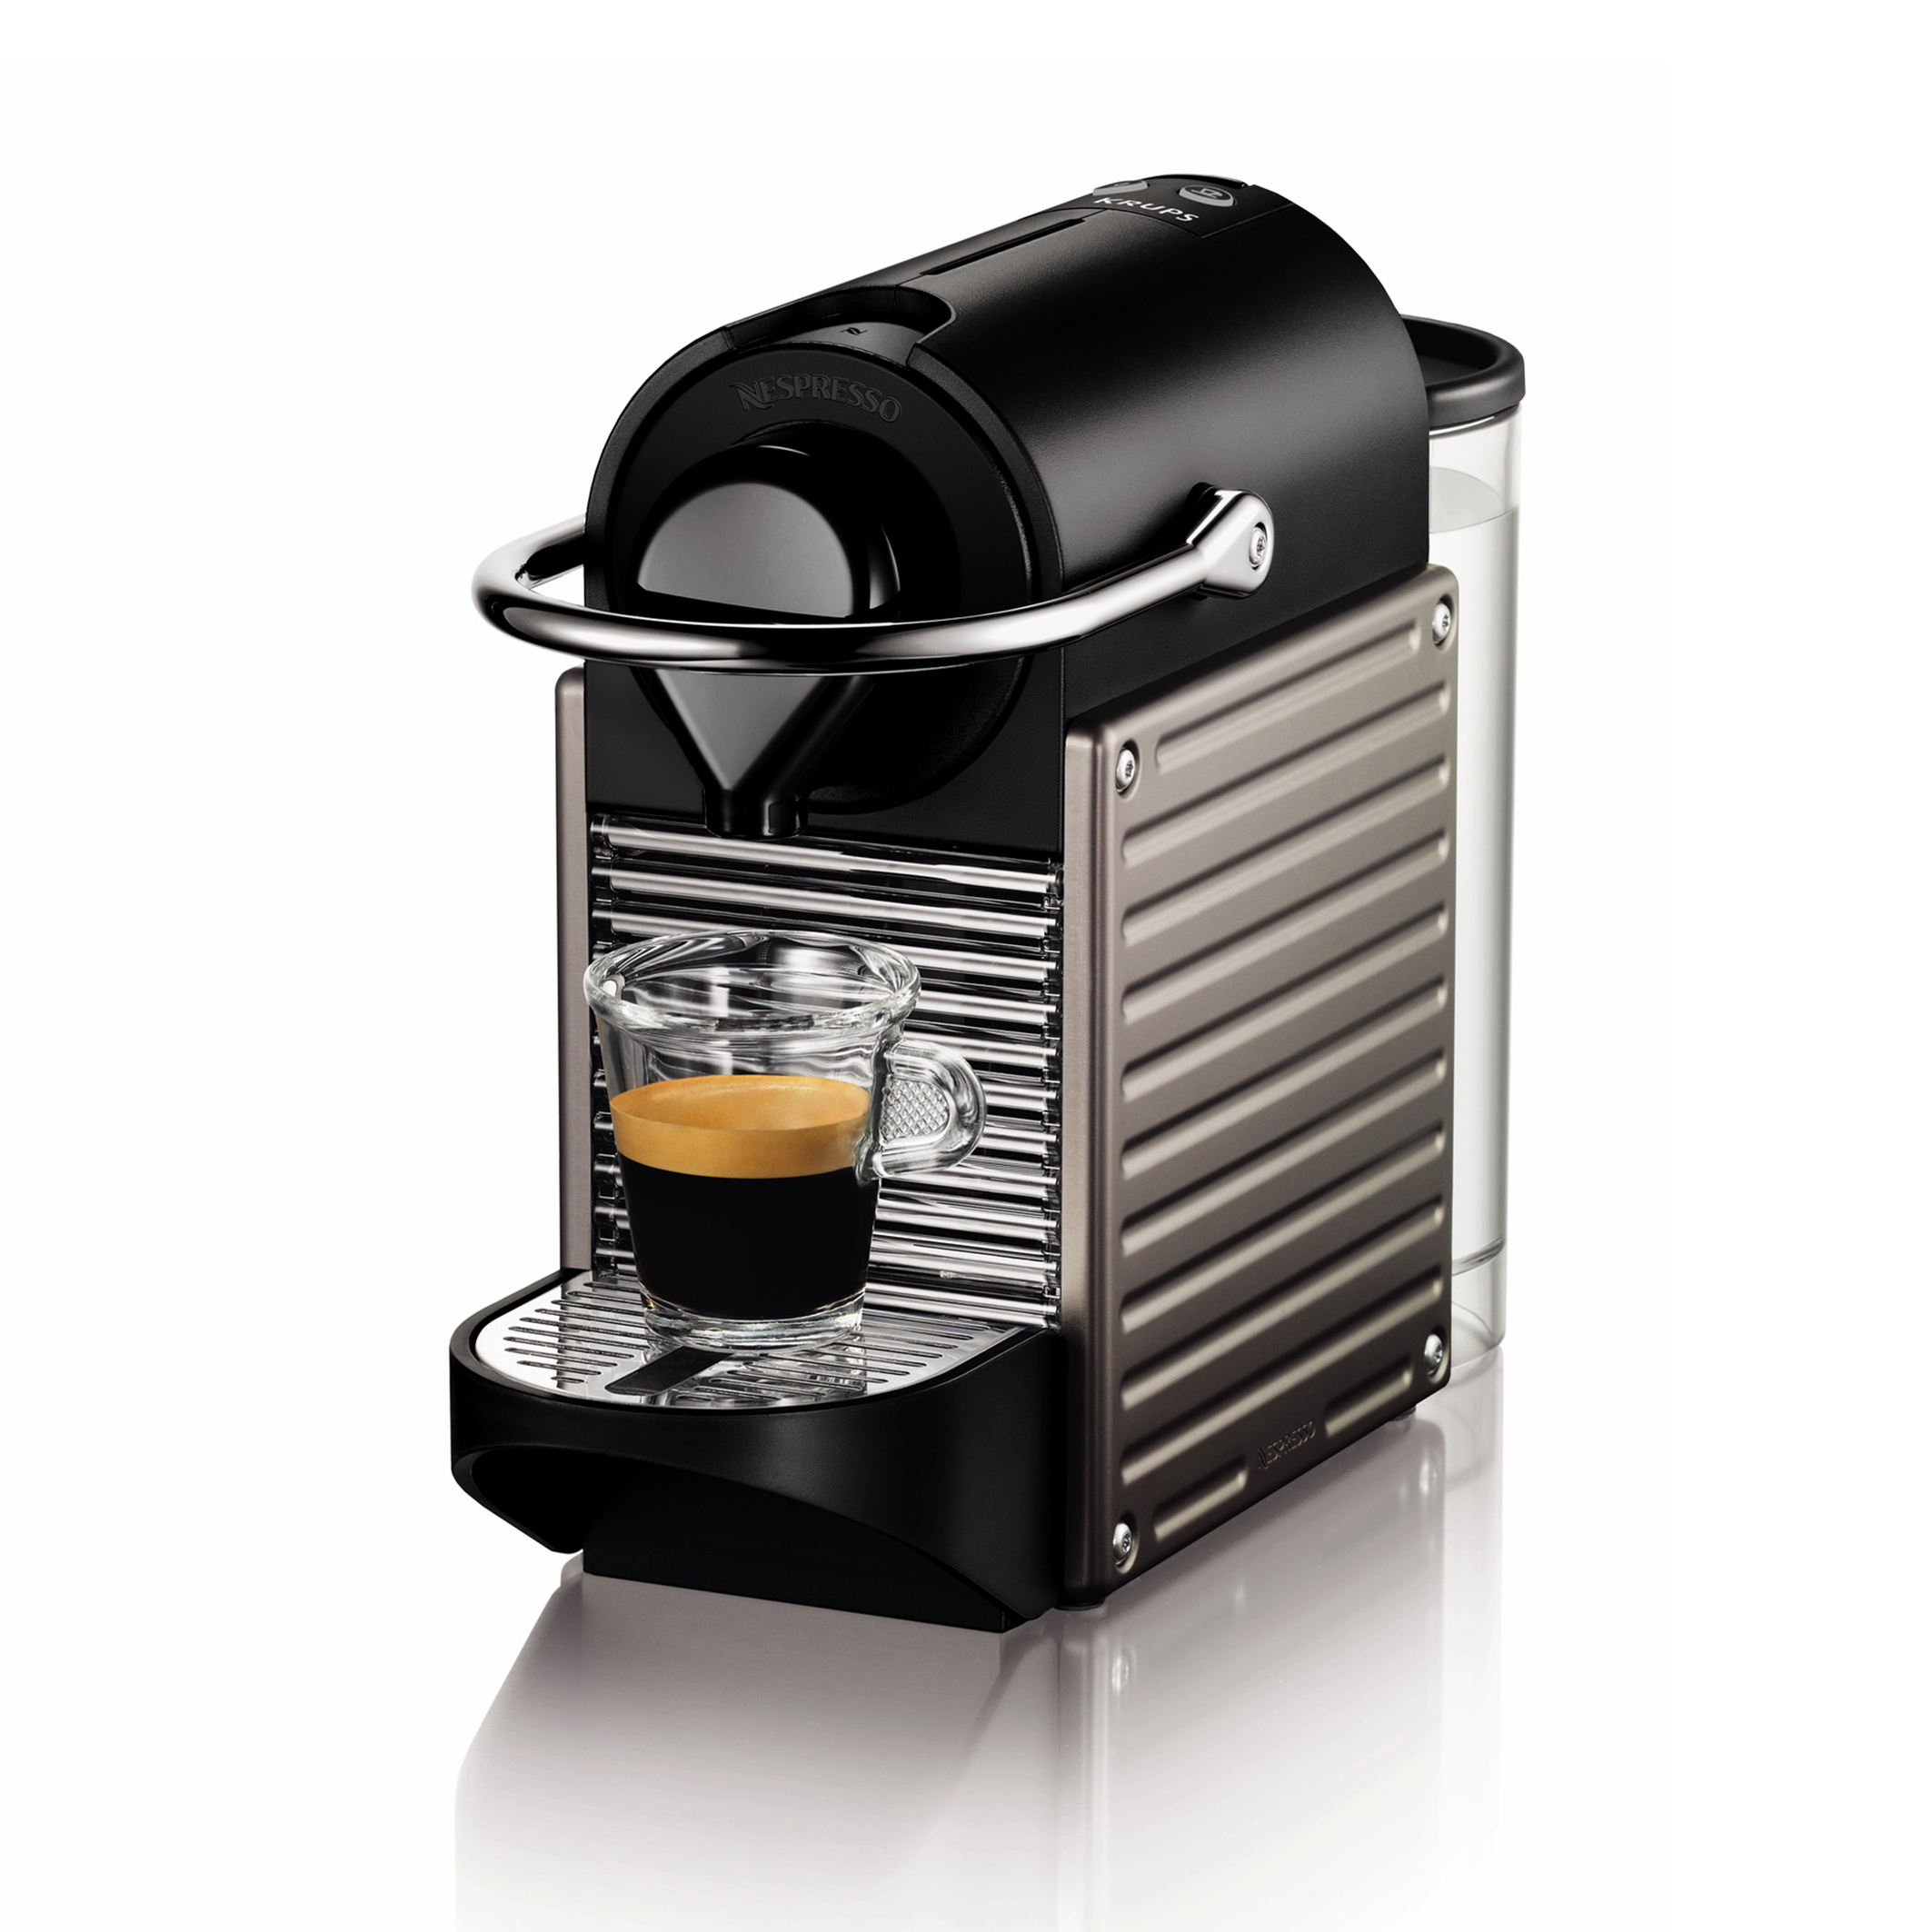 Sluiting Tien artikel Koffie apparaat nespresso pixie yy4127fd titaan Krups | La Redoute